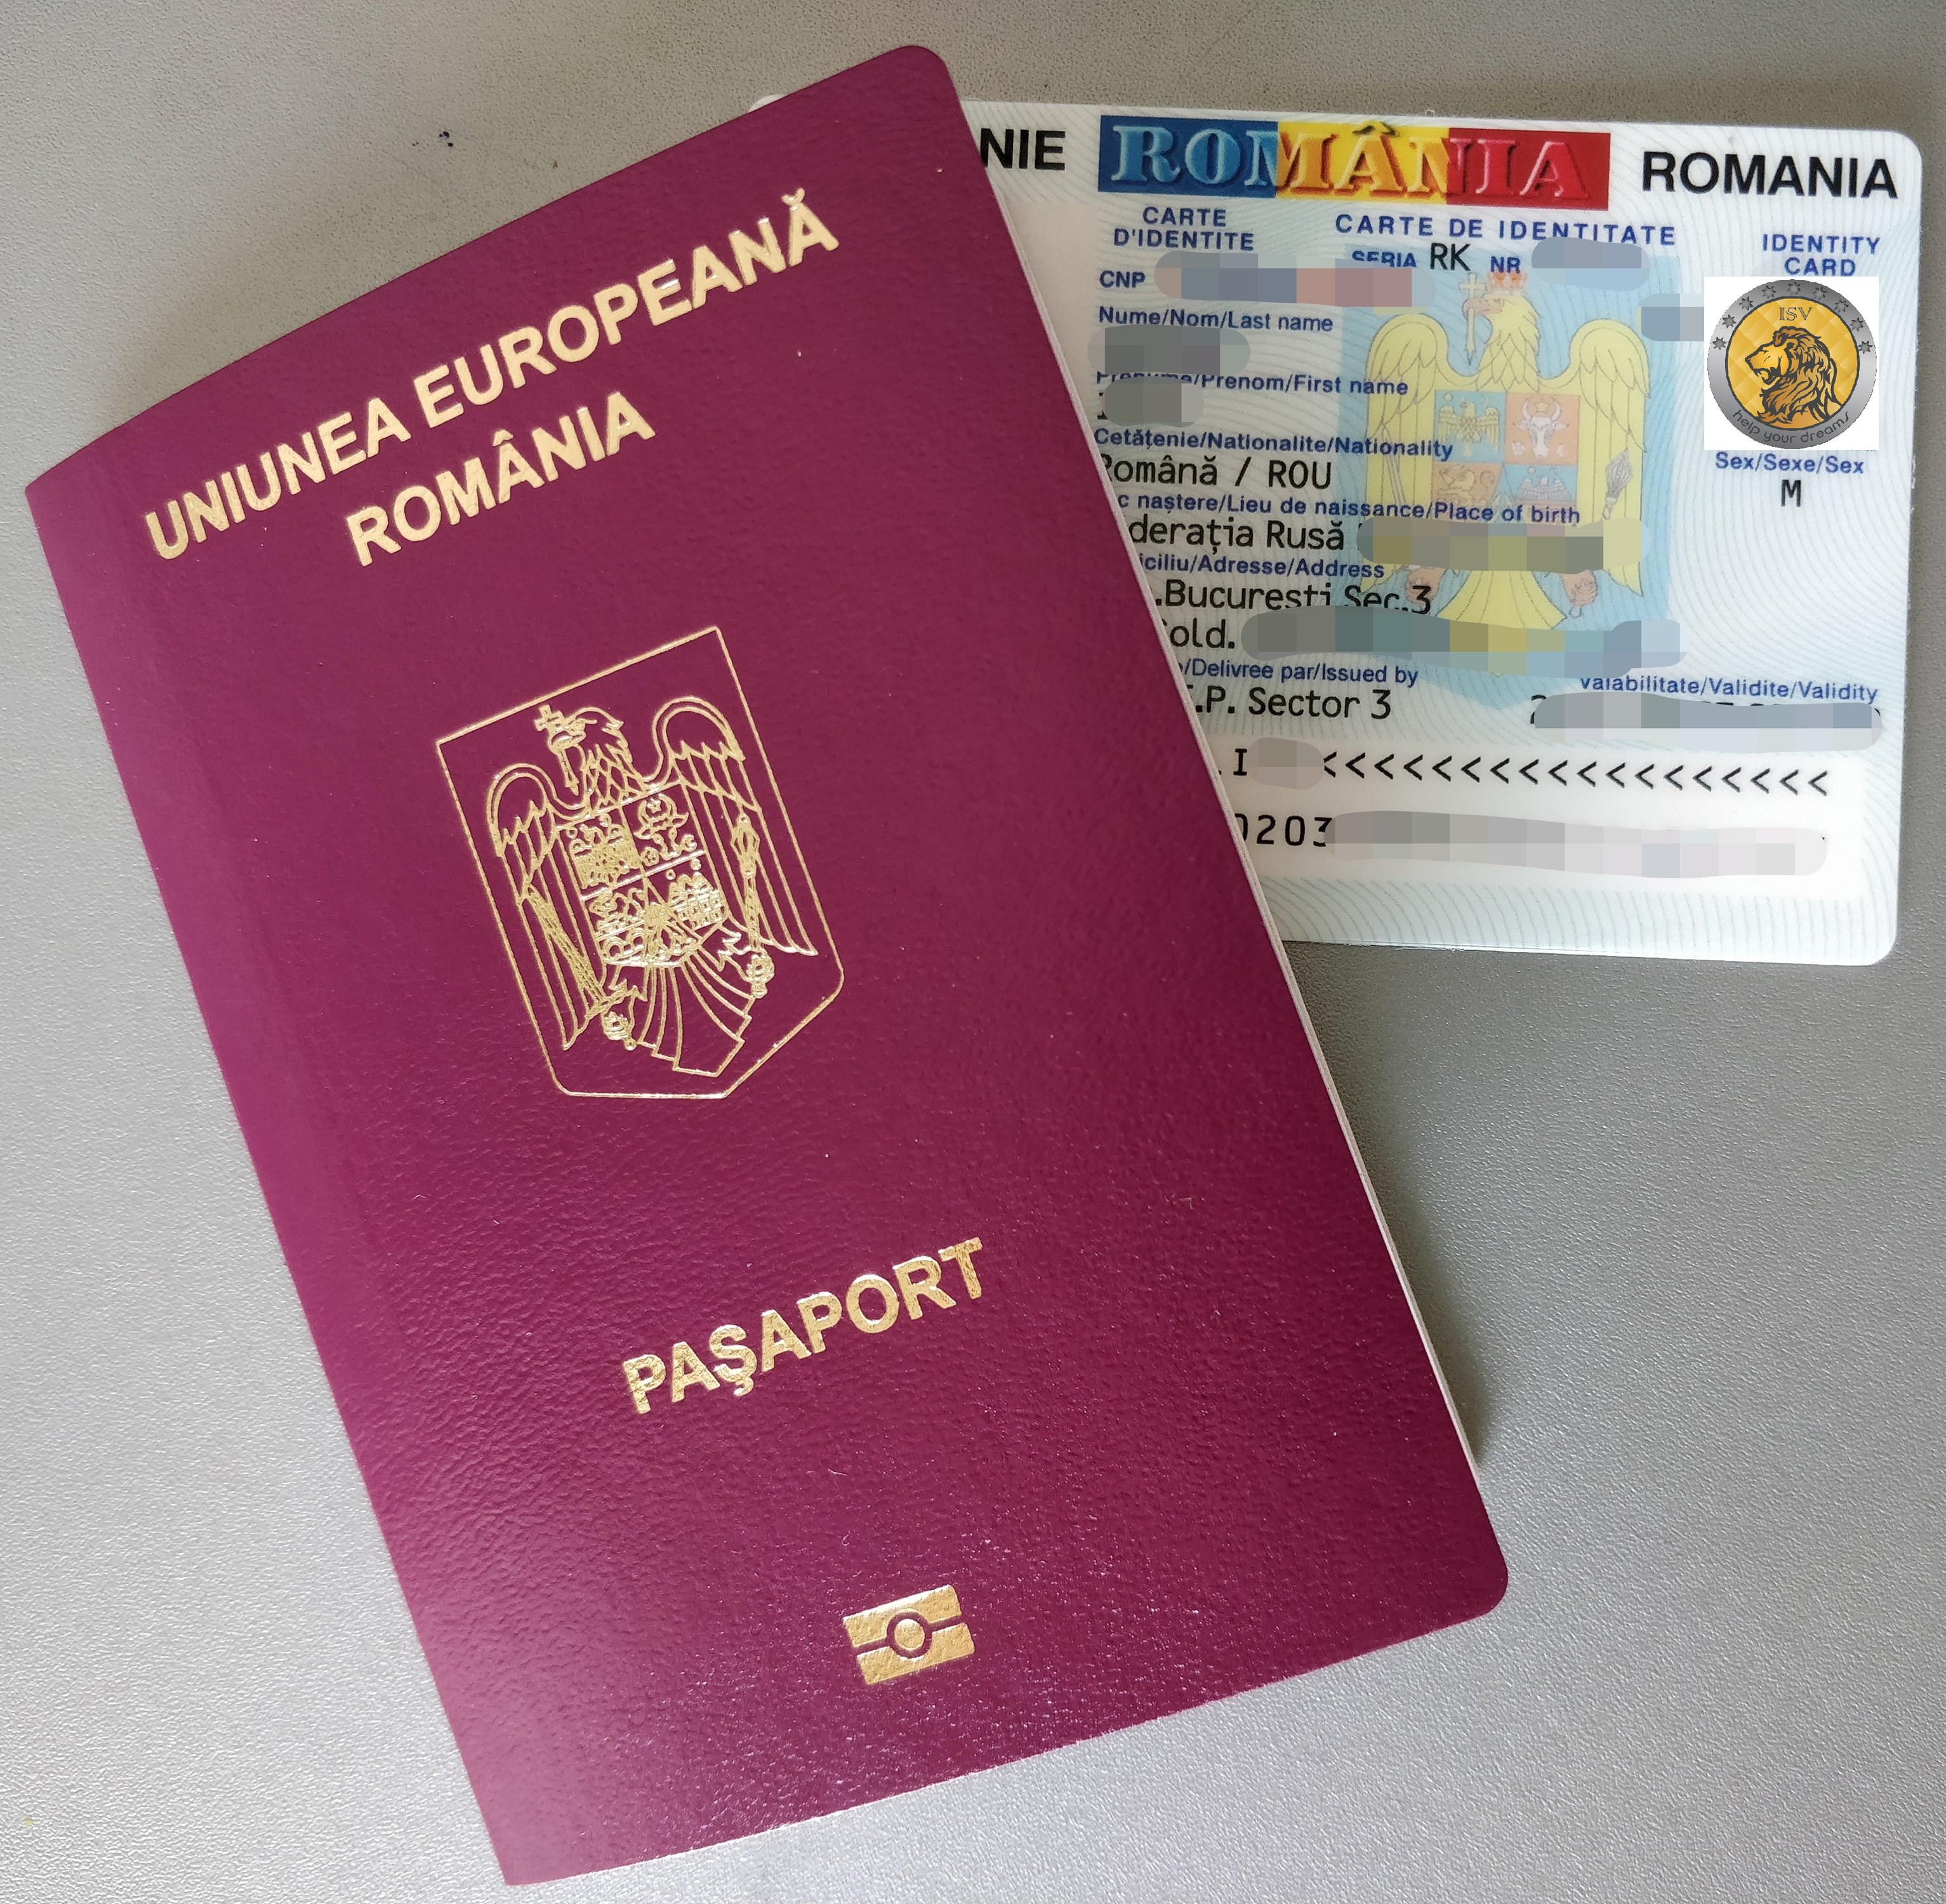 Внутренний заграничный паспорт Румынии